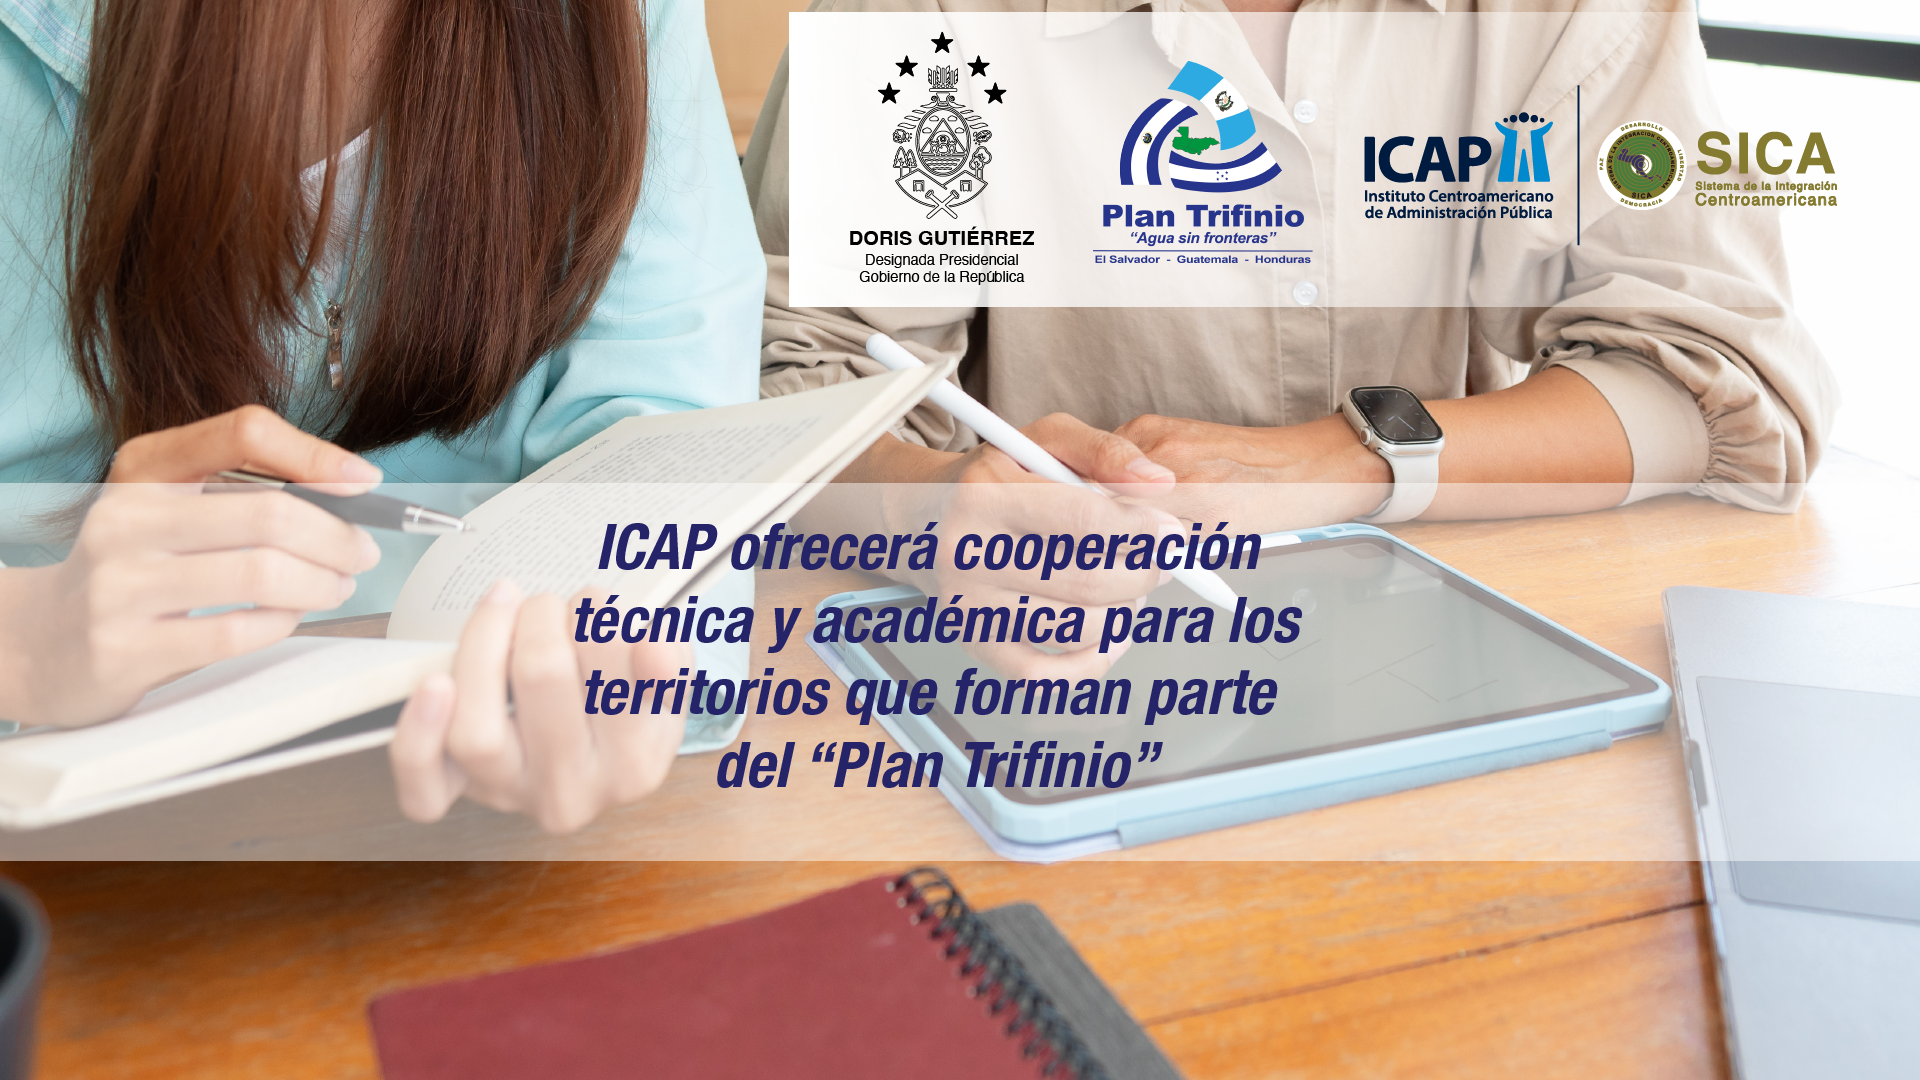 ICAP fortalecerá capacidades en gestión de riegos y cambio climático en la República de Honduras